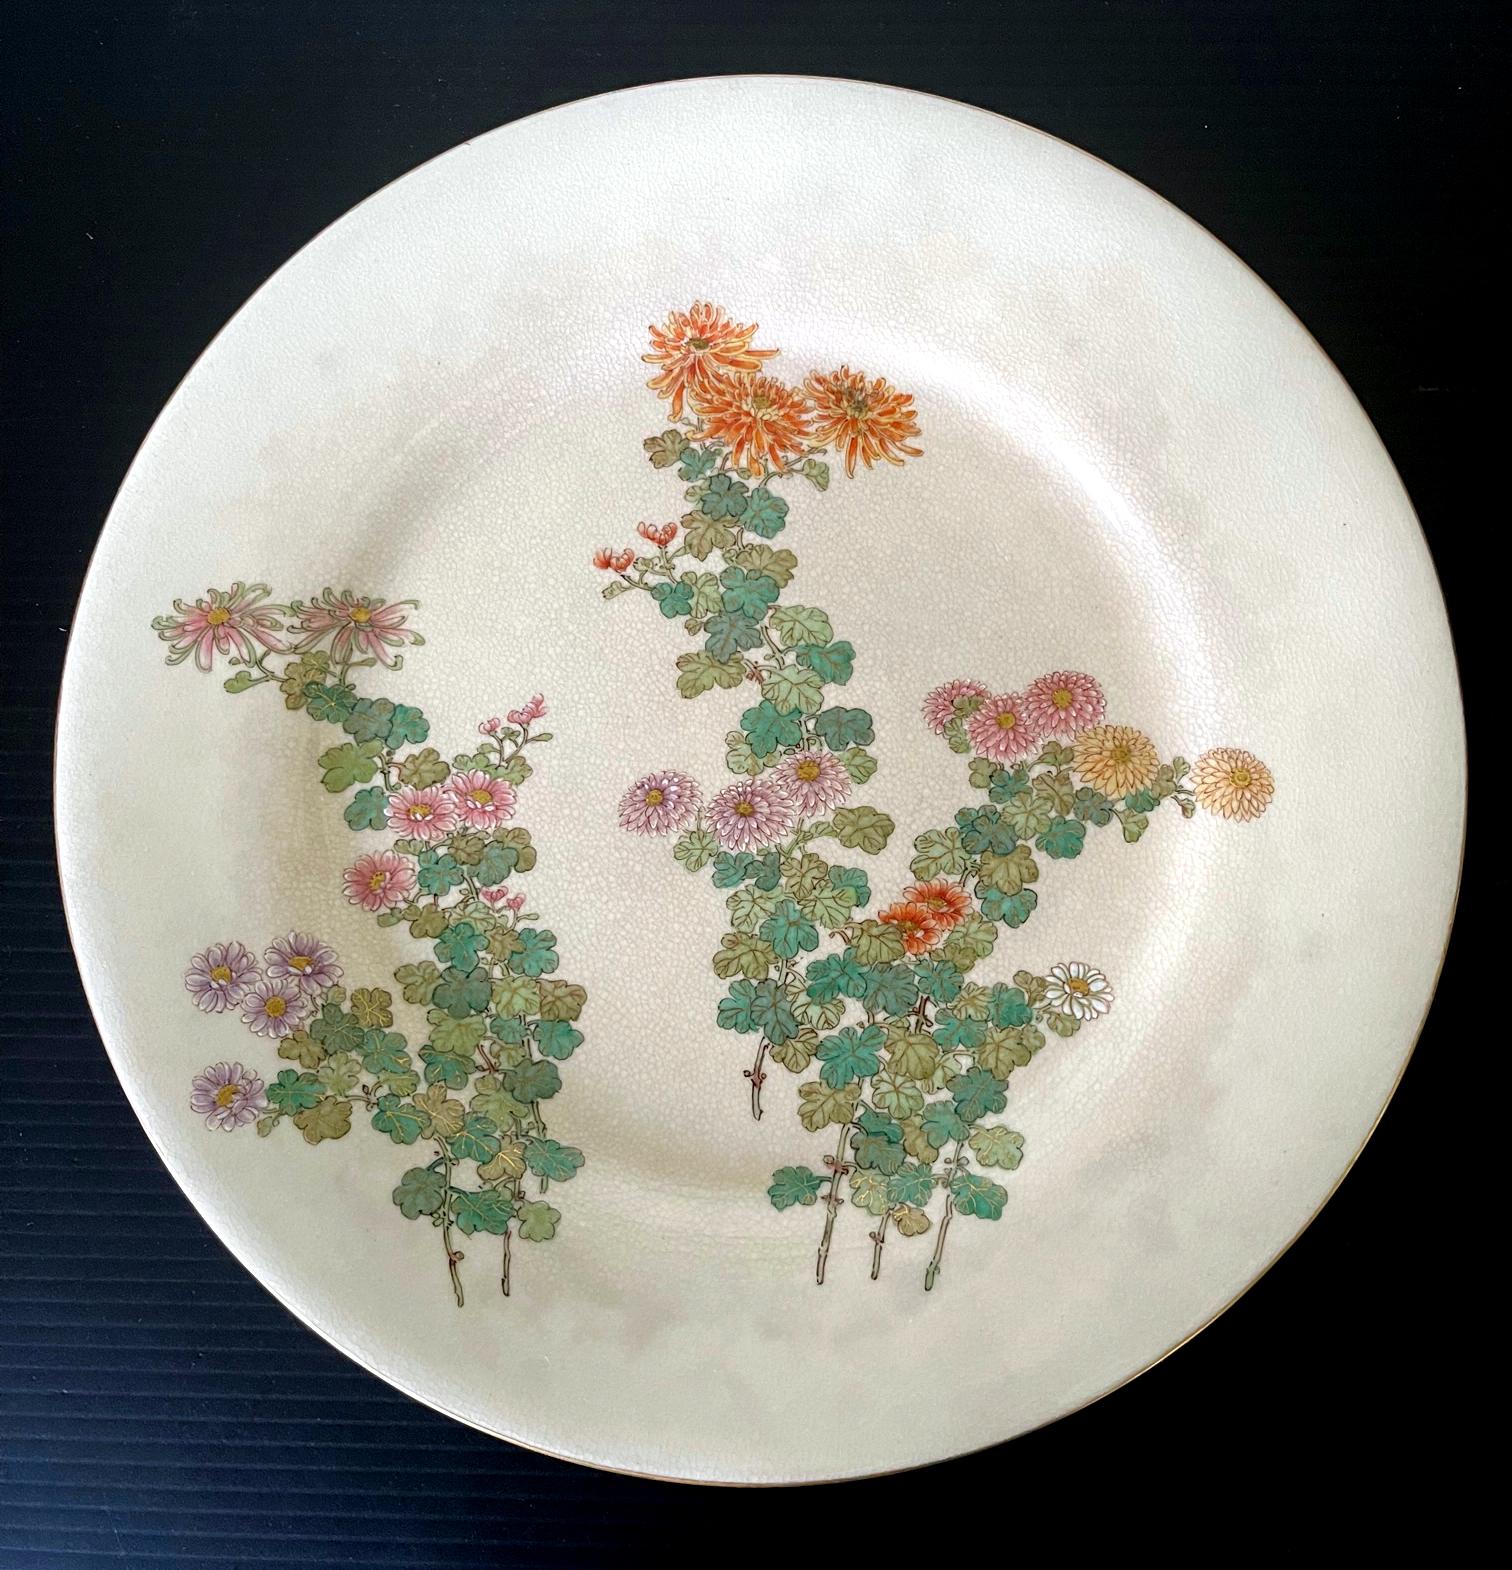 Ein feiner japanischer Satsuma-Keramikteller, hergestellt von Kinkozan und vertrieben von Yamanaka & Co. um 1900-20 (späte Meiji- bis frühe Tasho-Periode). Der cremefarbene, glasierte Teller zeigt ein sehr feines Dekor aus Bündeln von